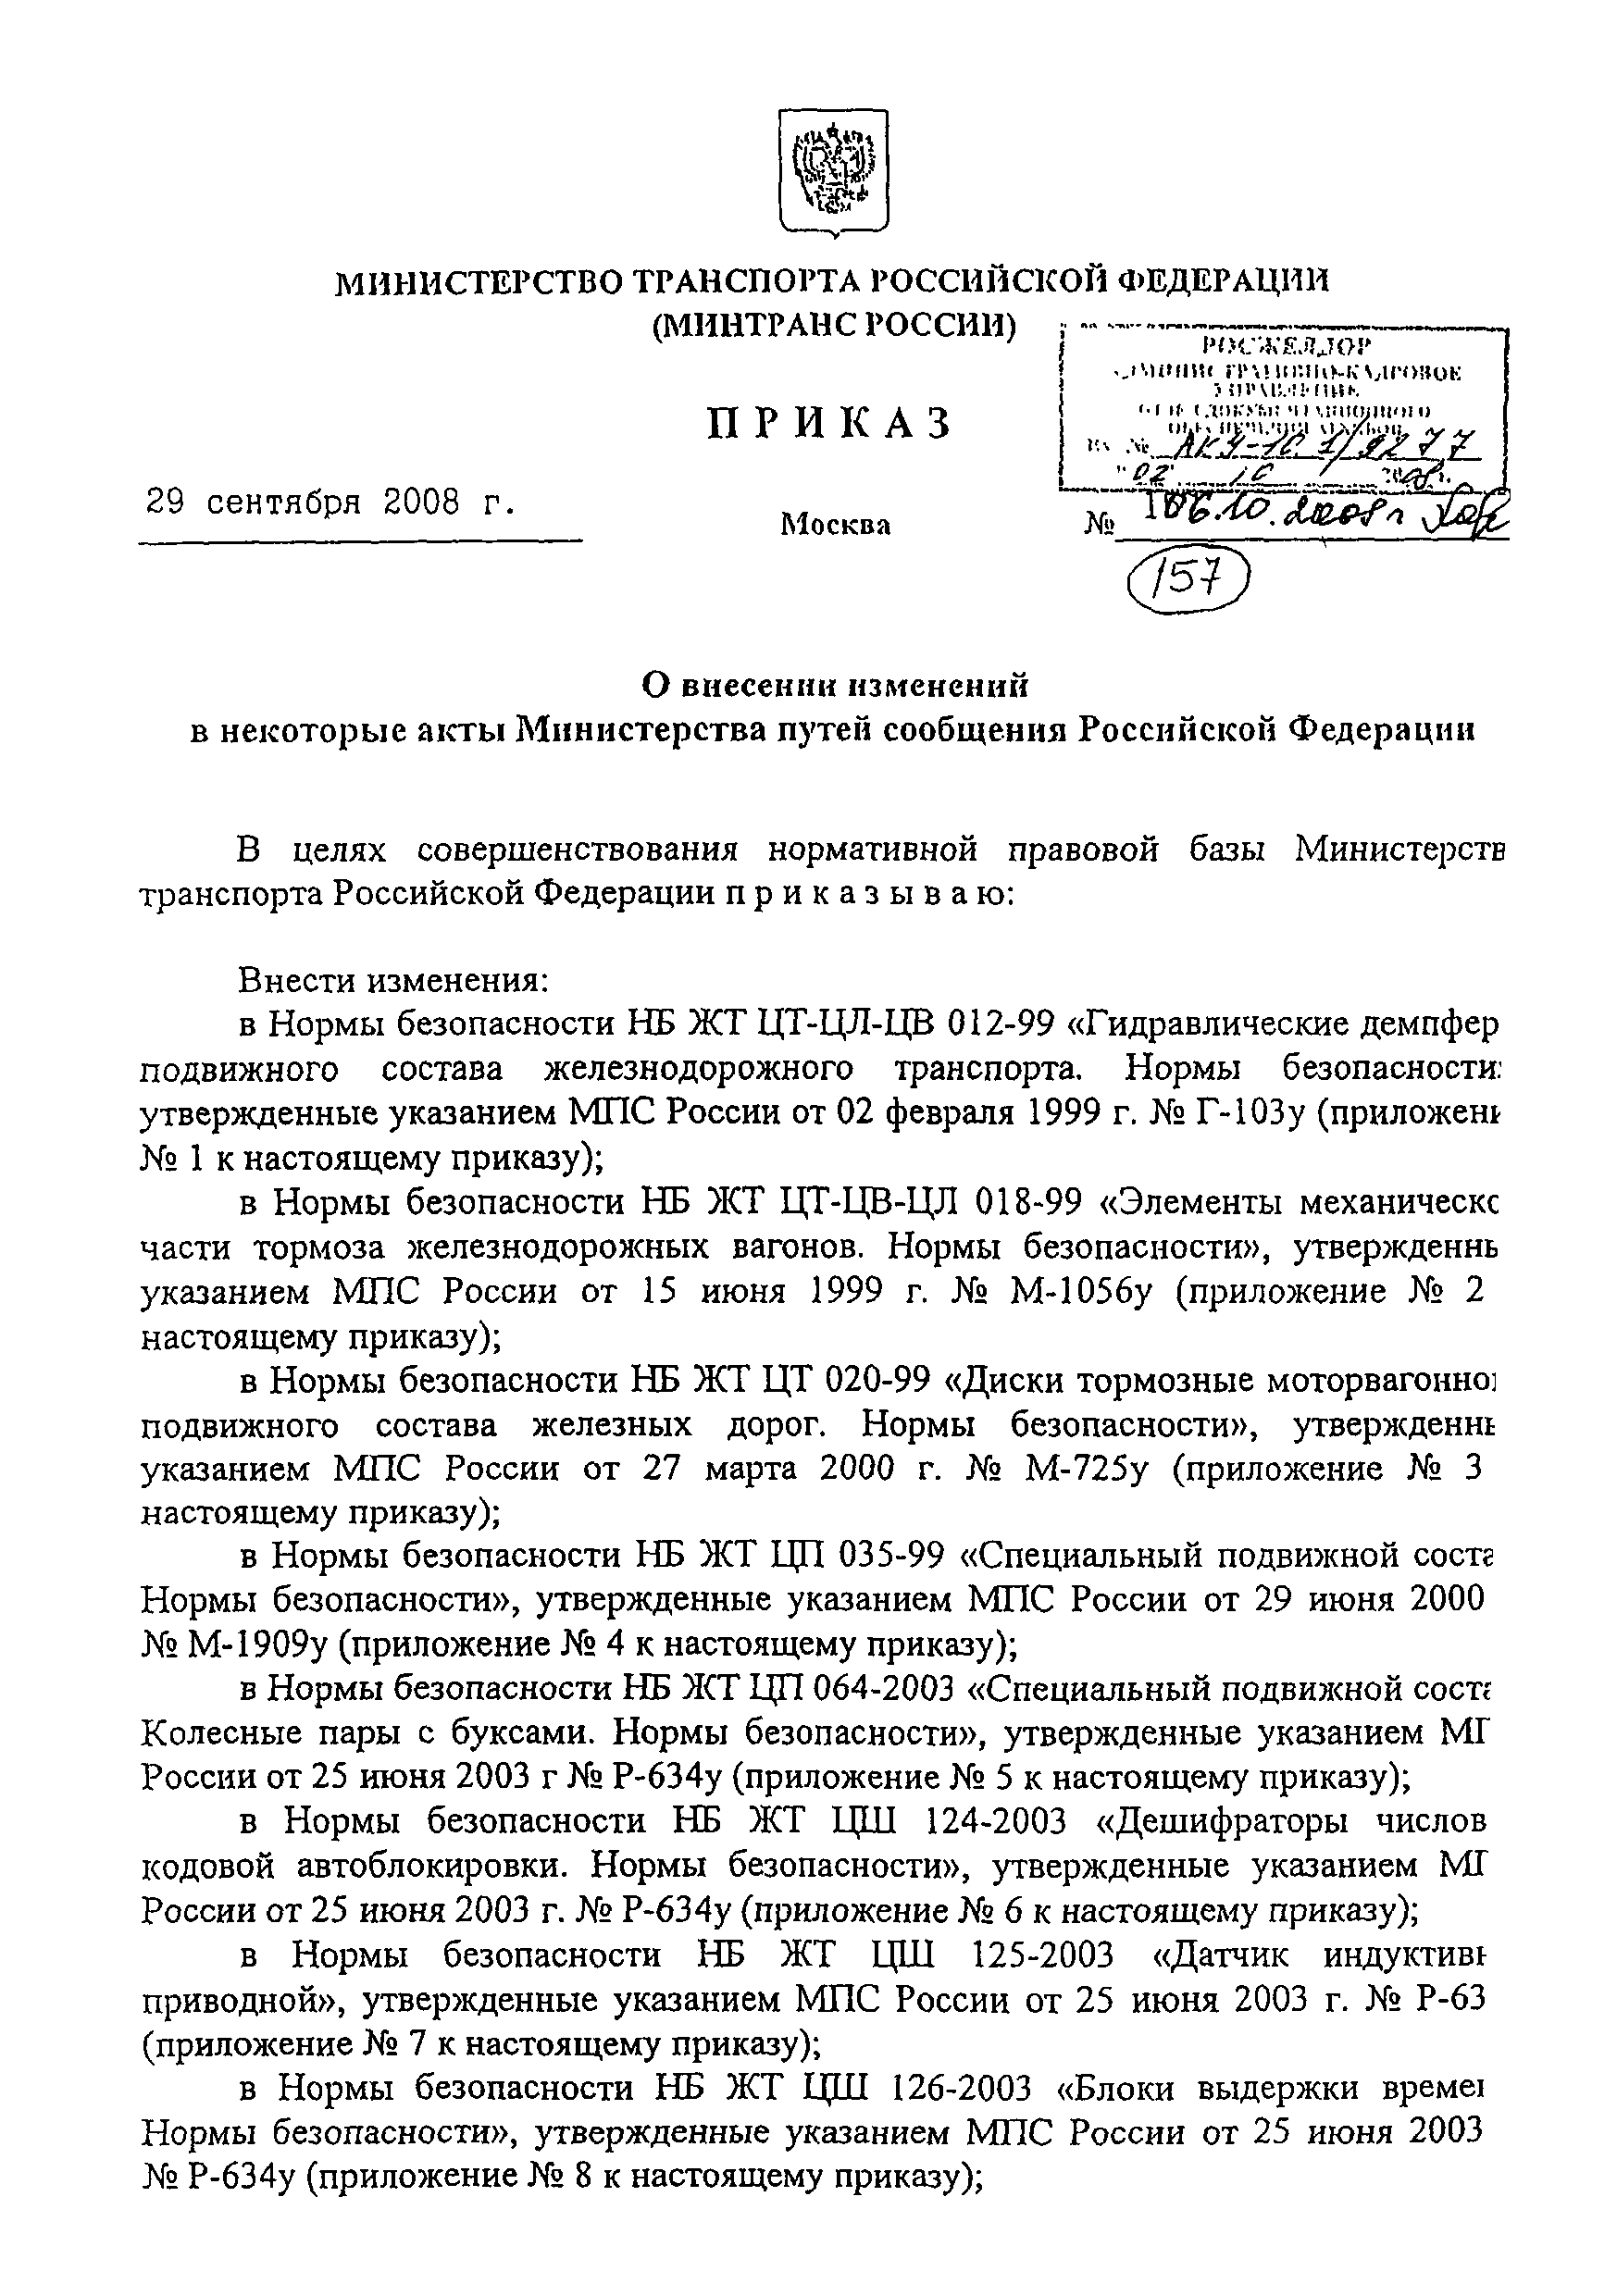 ФТС ЖТ ЦТ 020-99